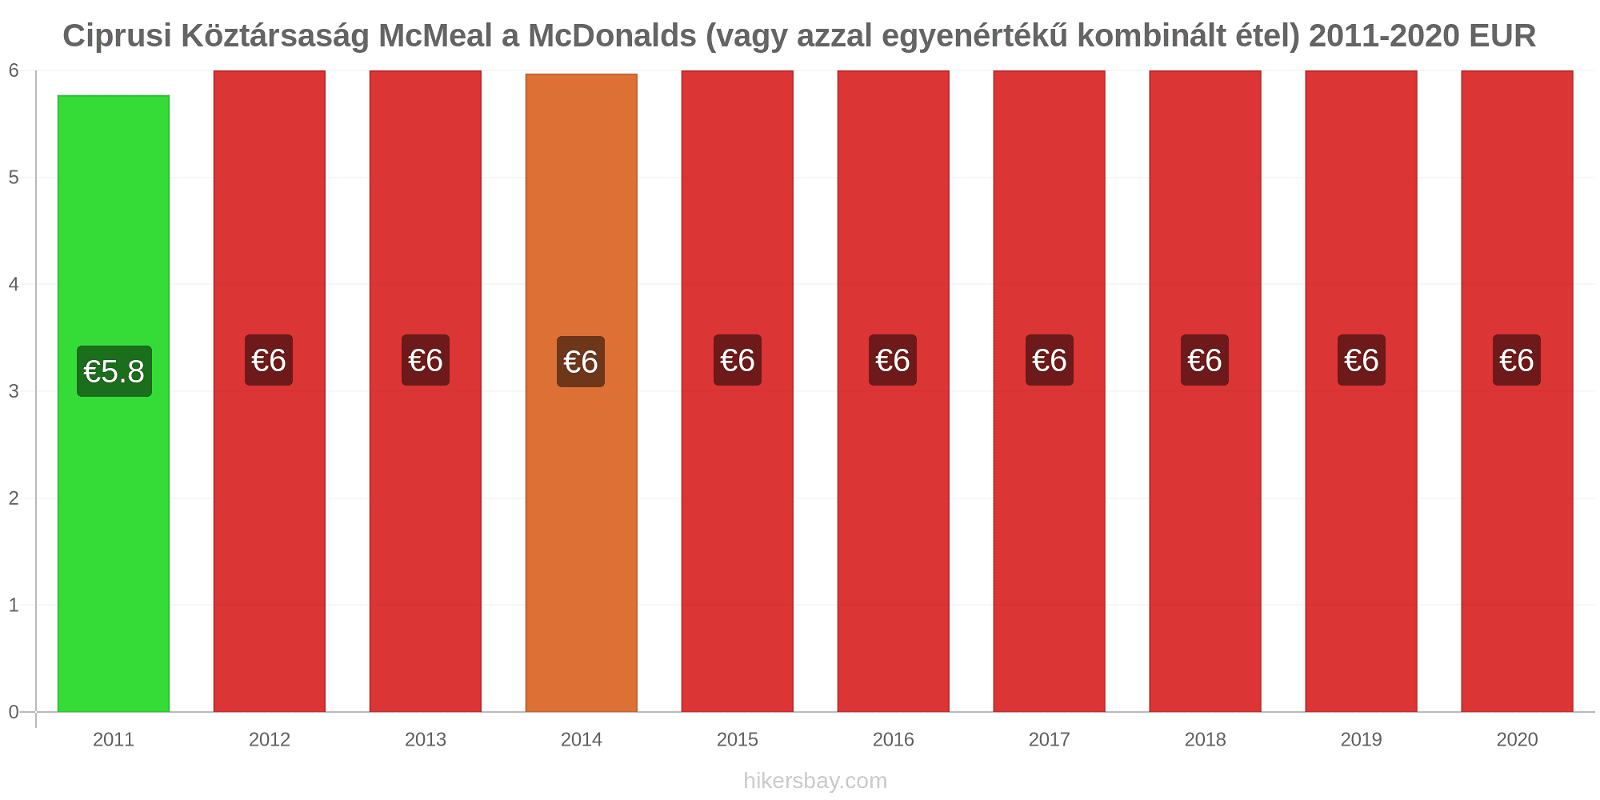 Ciprusi Köztársaság árváltozások McMeal a McDonalds (vagy azzal egyenértékű kombinált étel) hikersbay.com